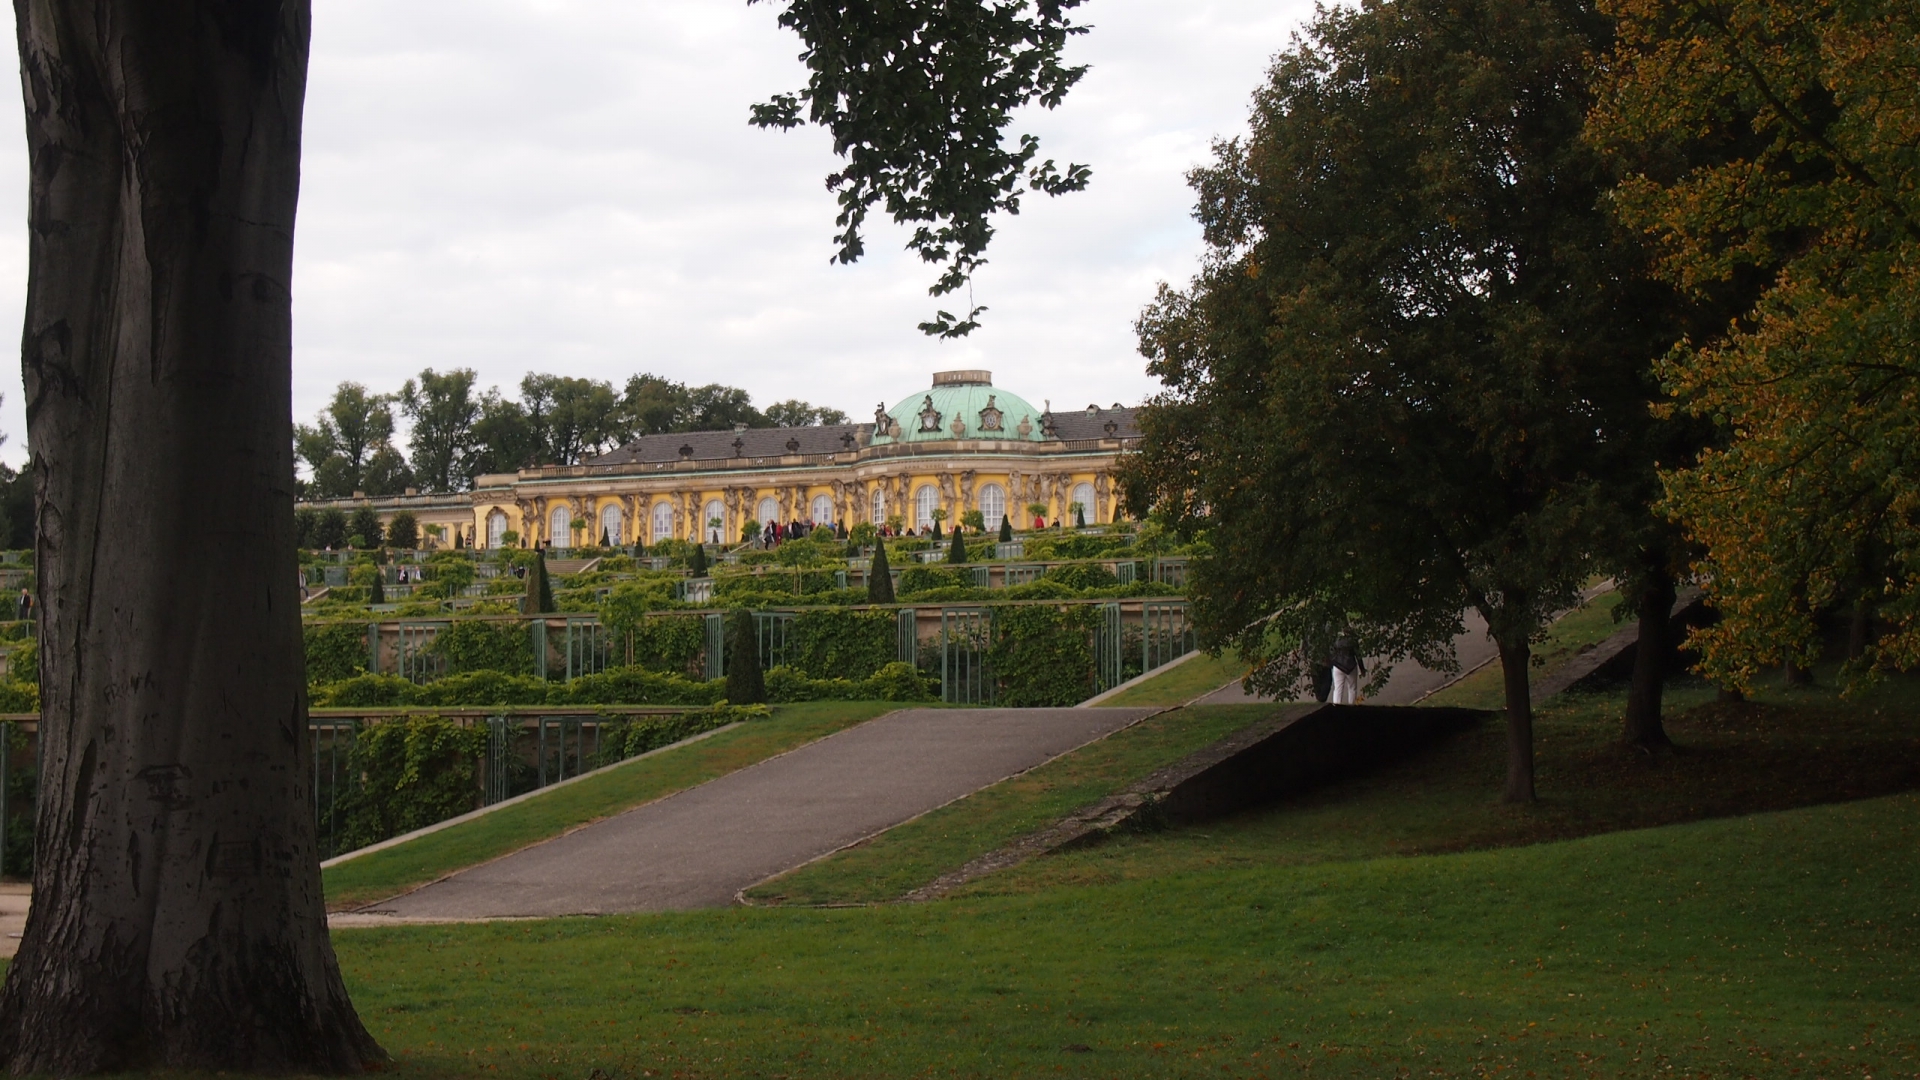 ボツダムとベルリンの宮殿と園庭